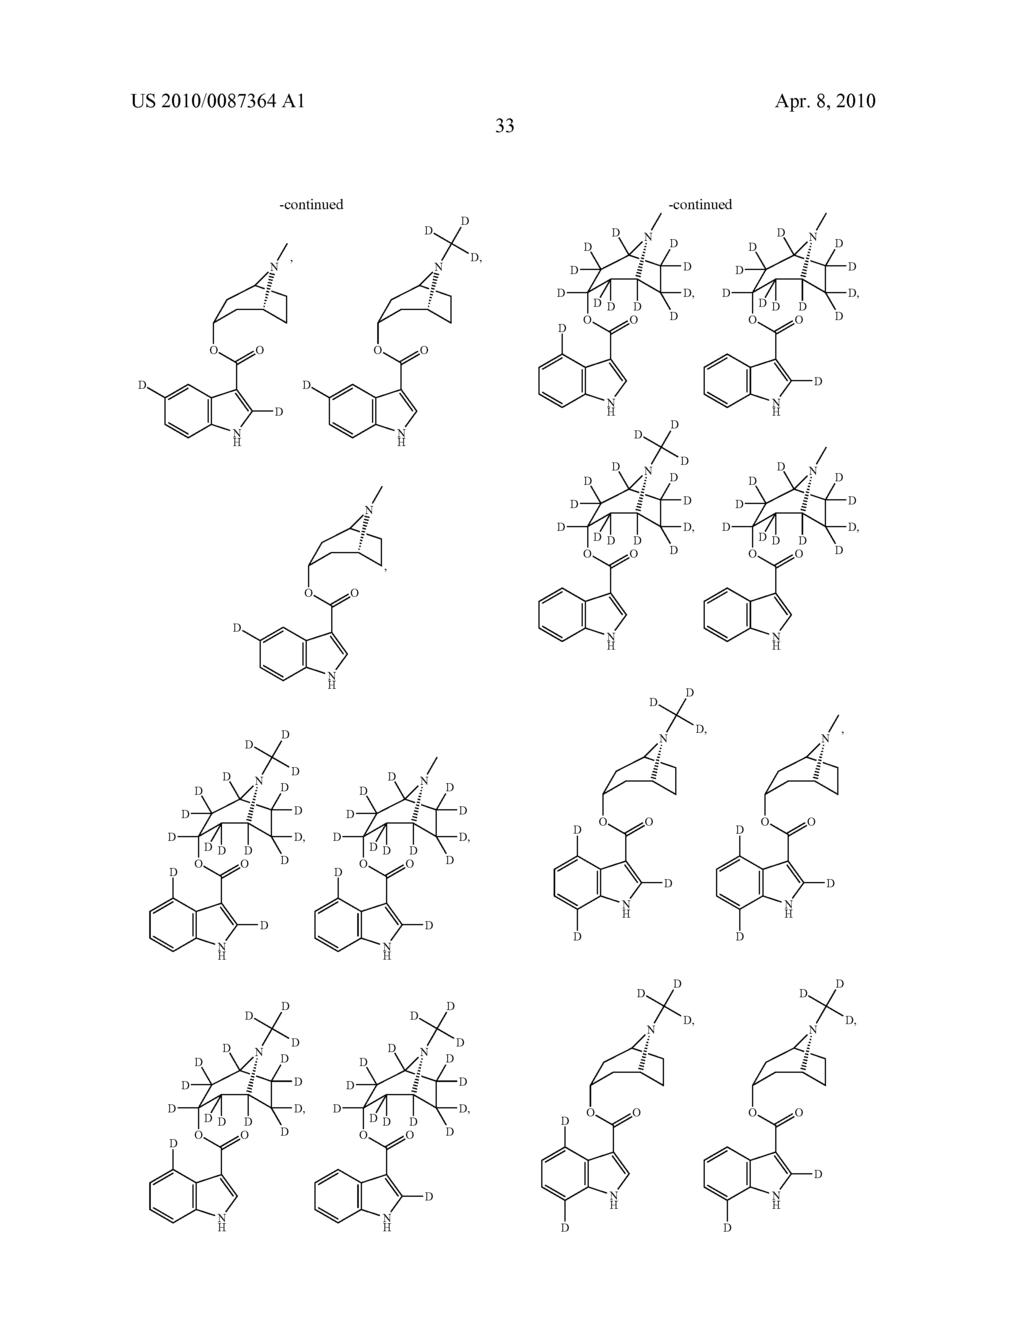 TROPINE MODULATORS OF 5-HT3 RECEPTOR - diagram, schematic, and image 34